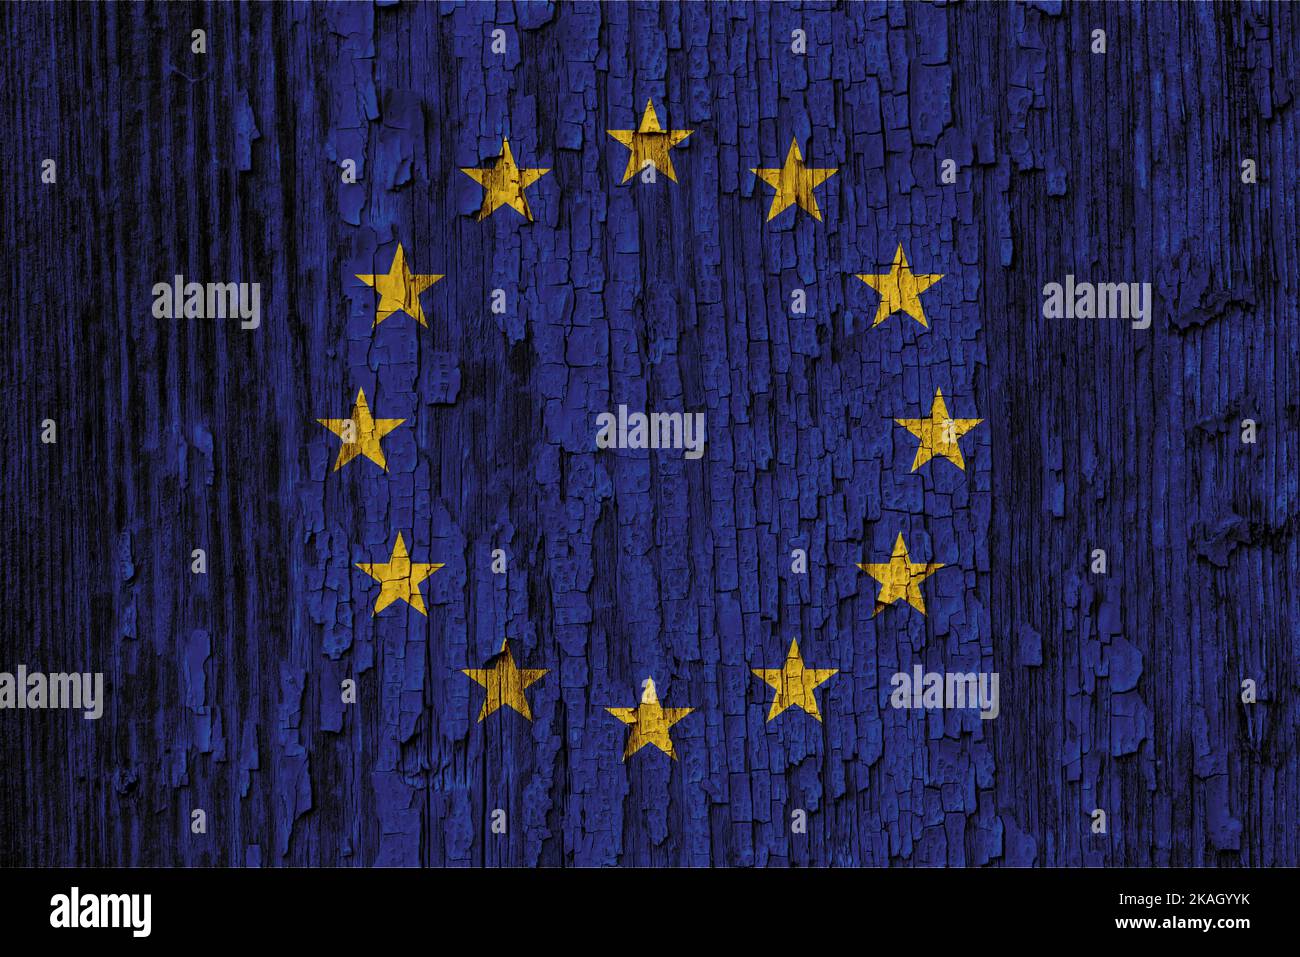 Die Europaflagge oder die Europaflagge besteht aus zwölf goldenen Sternen, die einen Kreis auf einem blauen Feld bilden. Es wurde 1955 vom Rat entworfen und angenommen Stockfoto